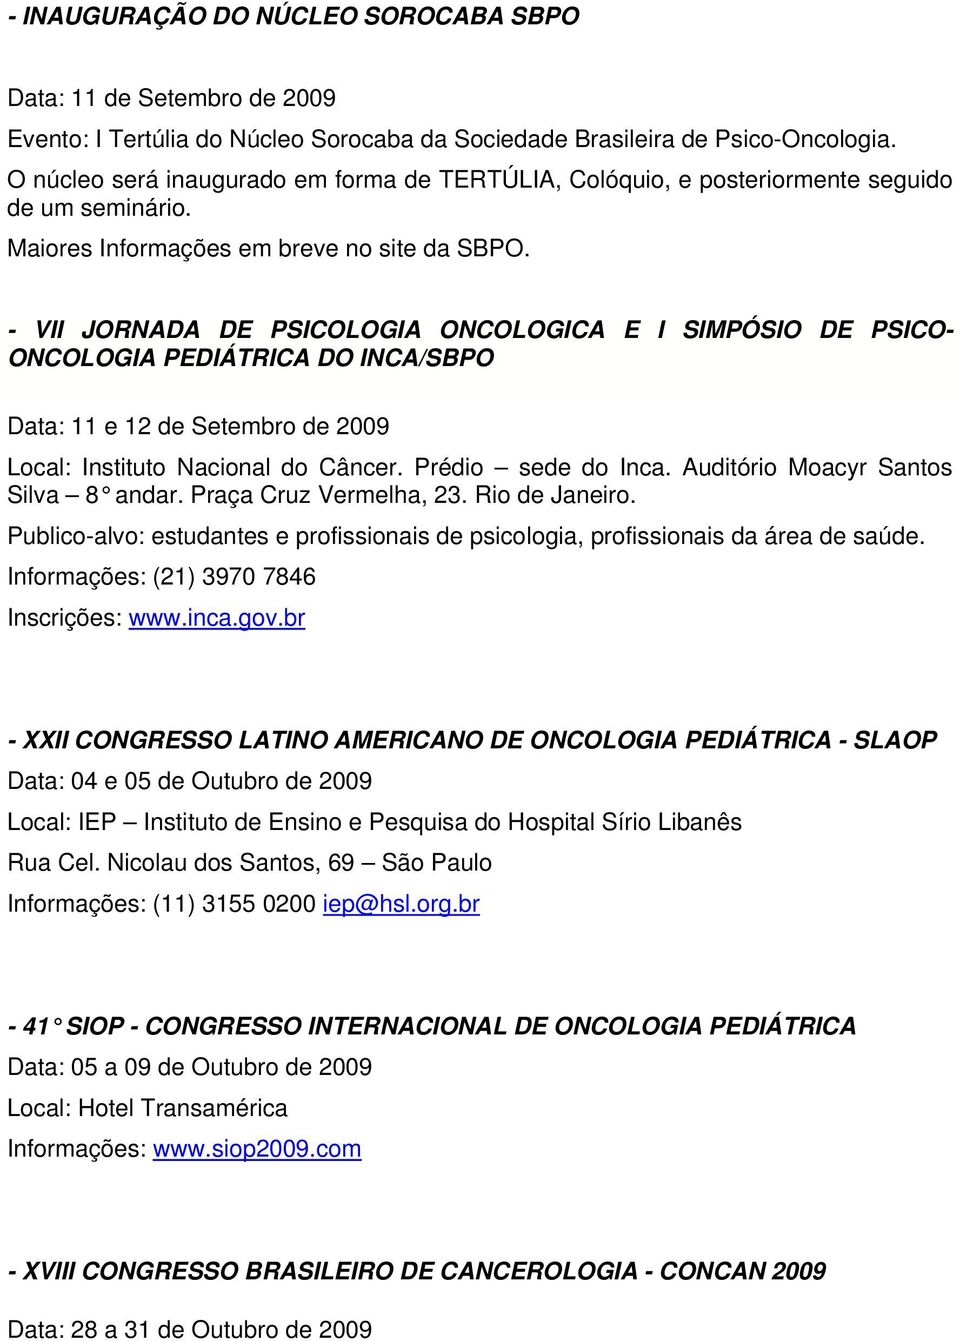 - VII JORNADA DE PSICOLOGIA ONCOLOGICA E I SIMPÓSIO DE PSICO- ONCOLOGIA PEDIÁTRICA DO INCA/SBPO Data: 11 e 12 de Setembro de 2009 Local: Instituto Nacional do Câncer. Prédio sede do Inca.